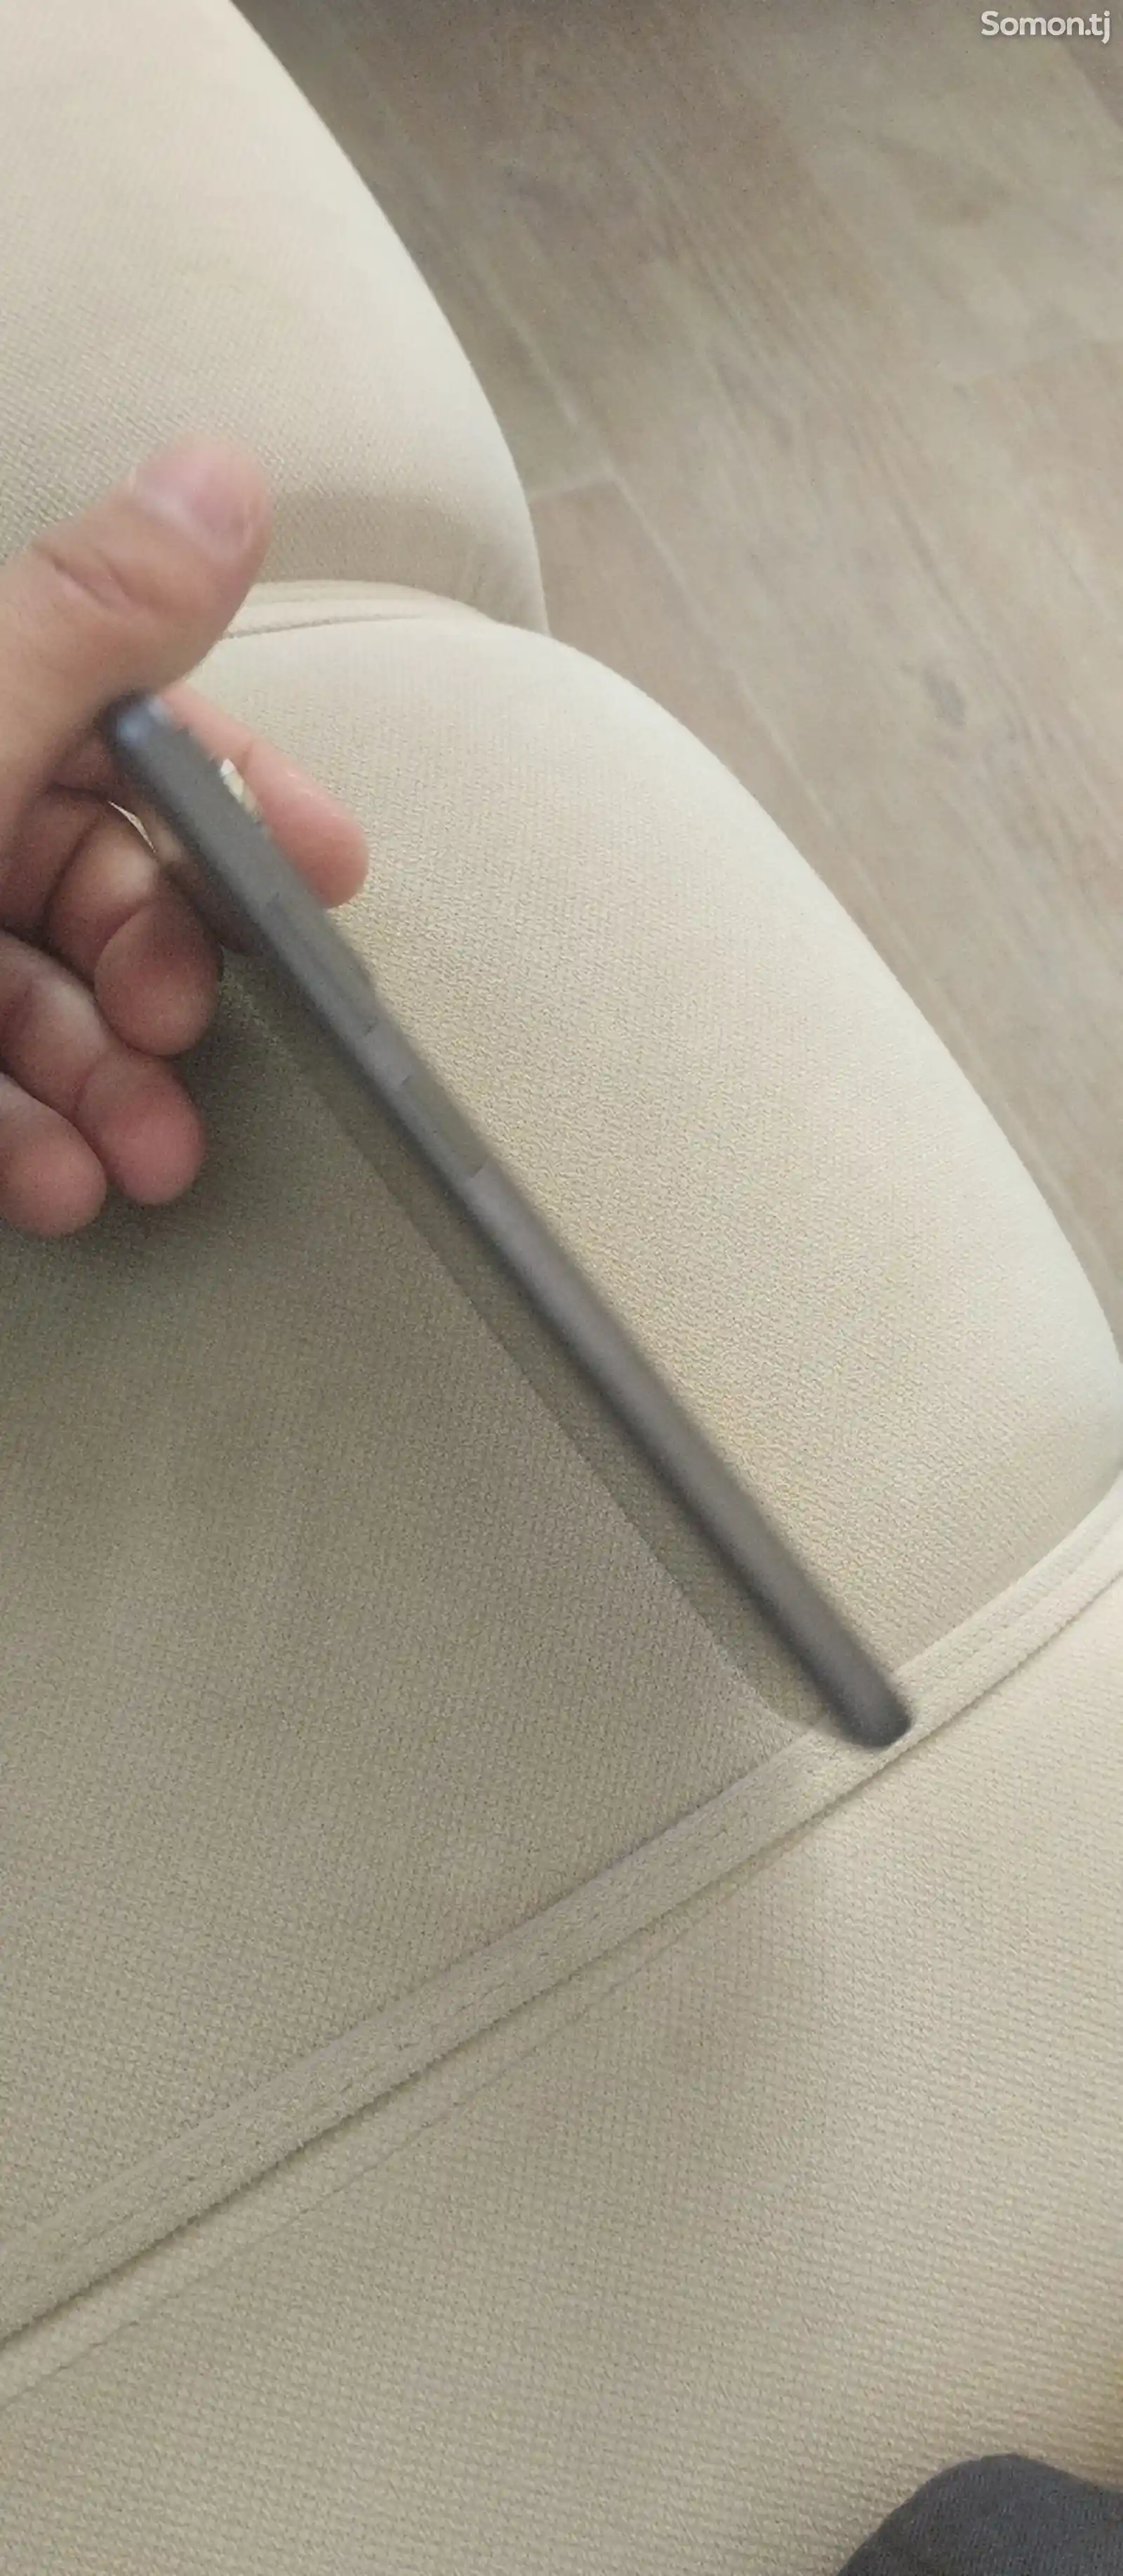 Xiaomi Redmi Note 12 Pro-6